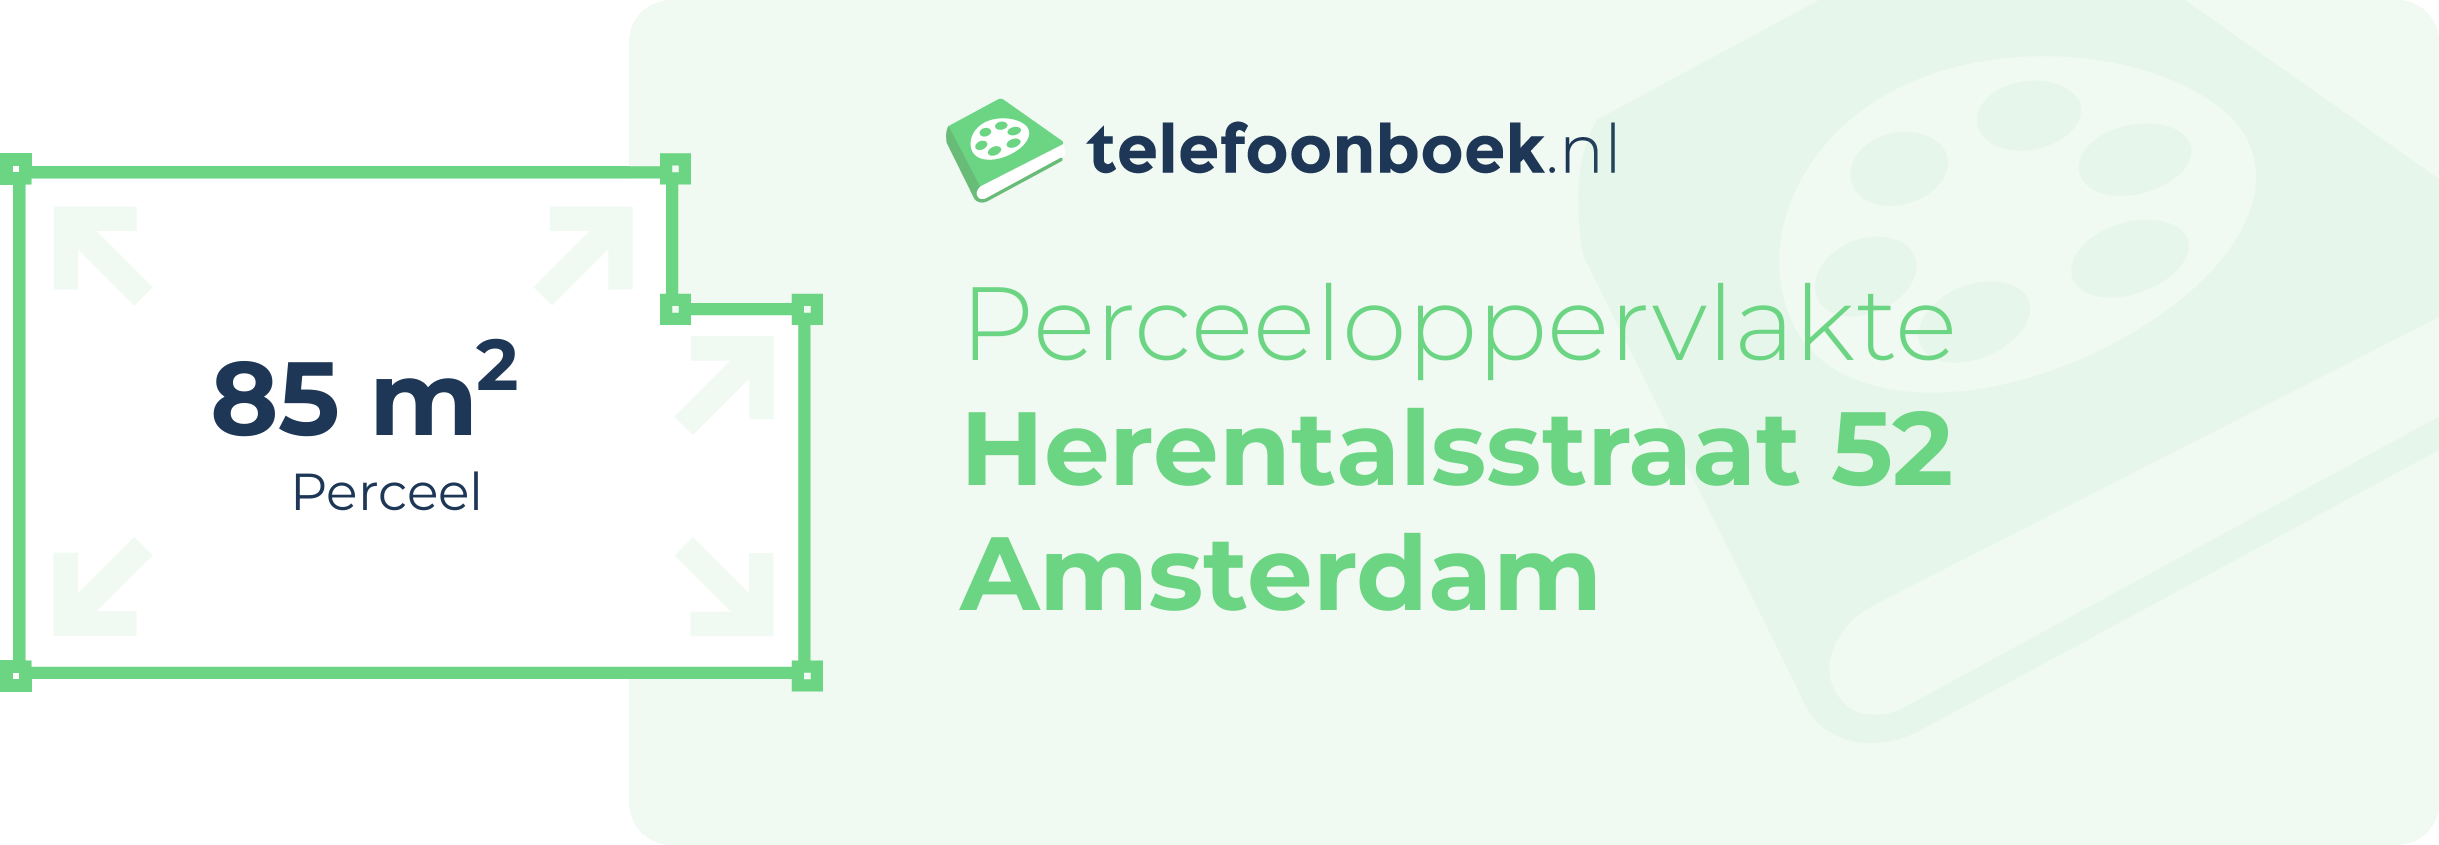 Perceeloppervlakte Herentalsstraat 52 Amsterdam